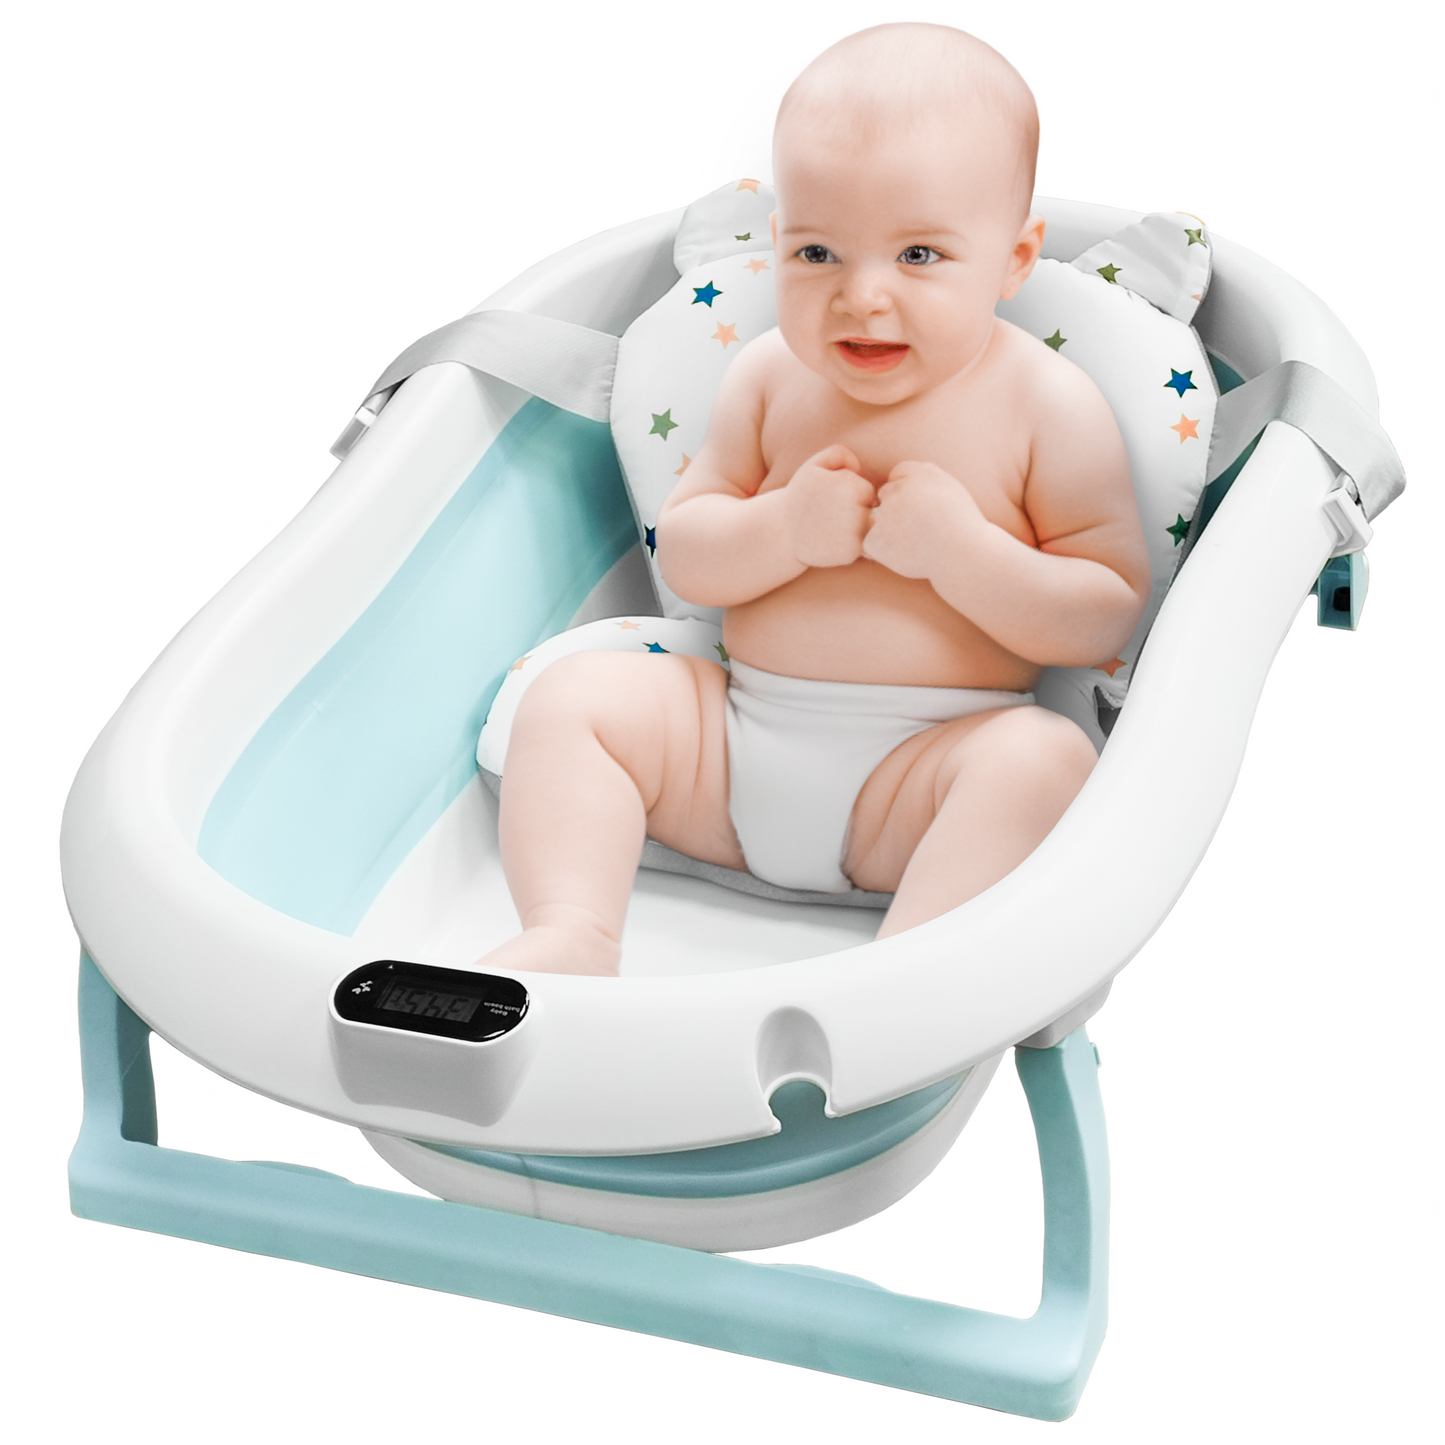 Hengda Bañera bebé plegable escalable + Cojín de baño, con Termómetro Gris  60,5x43x20,5cm